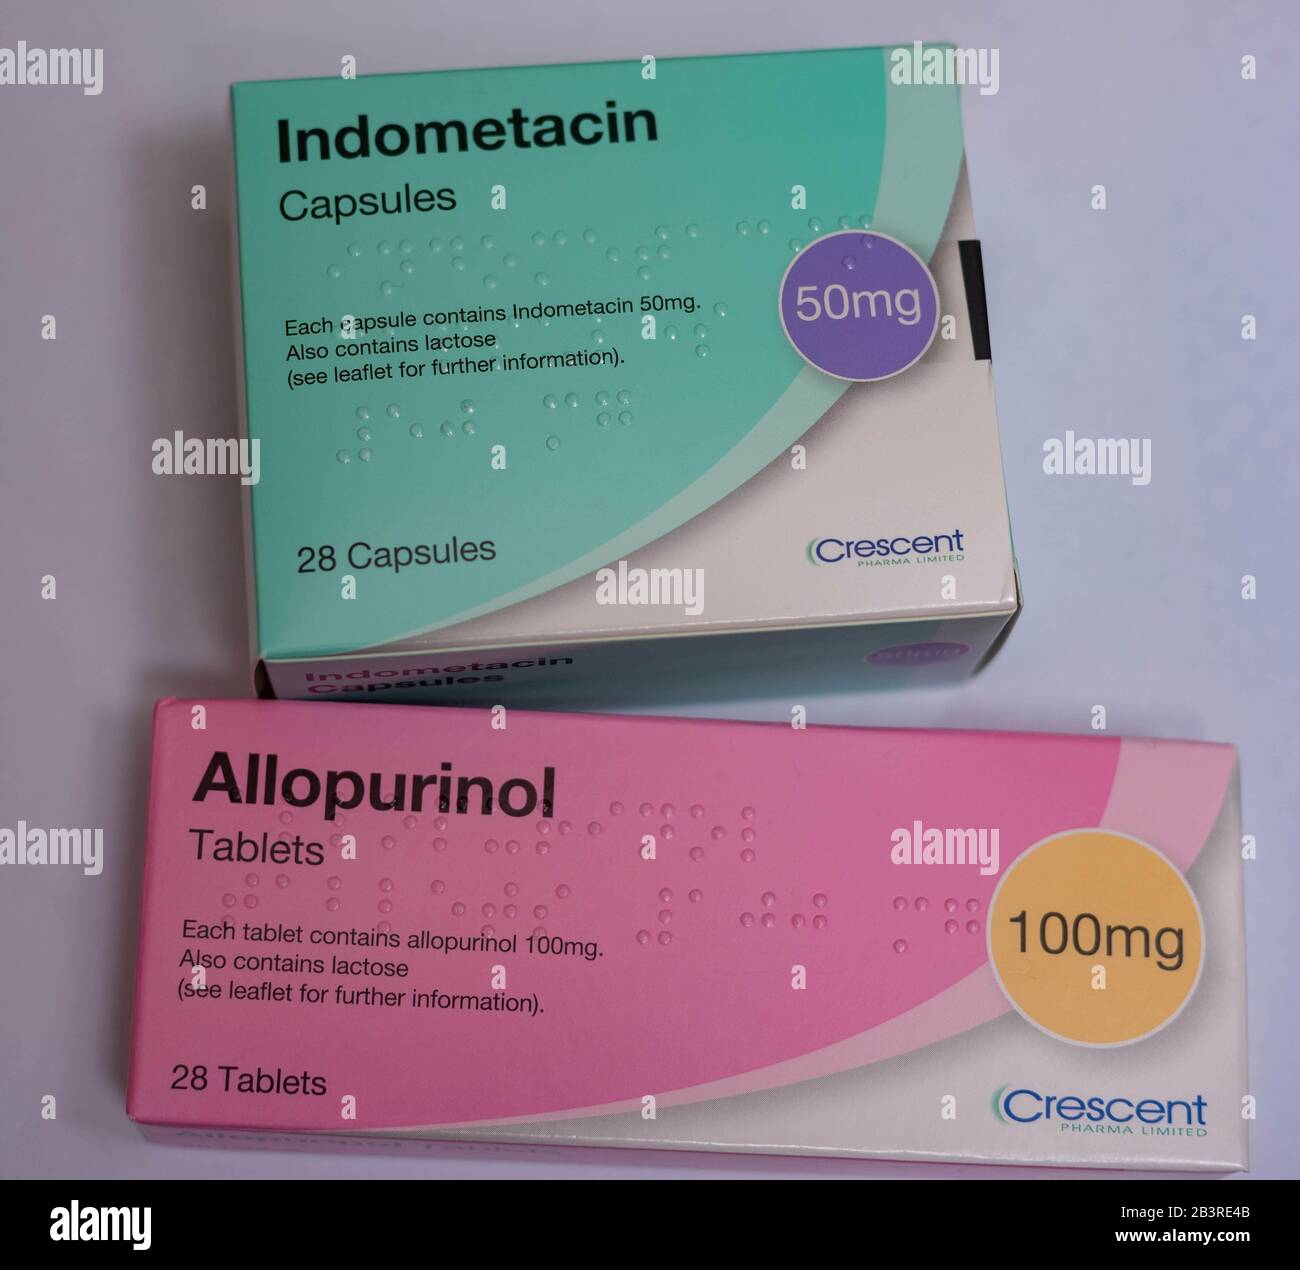 Farmaco gotta: Allopurional per ridurre la produzione di acido urico e Indometacina un farmaco antinfiammatorio non steroideo (FANS) Foto Stock